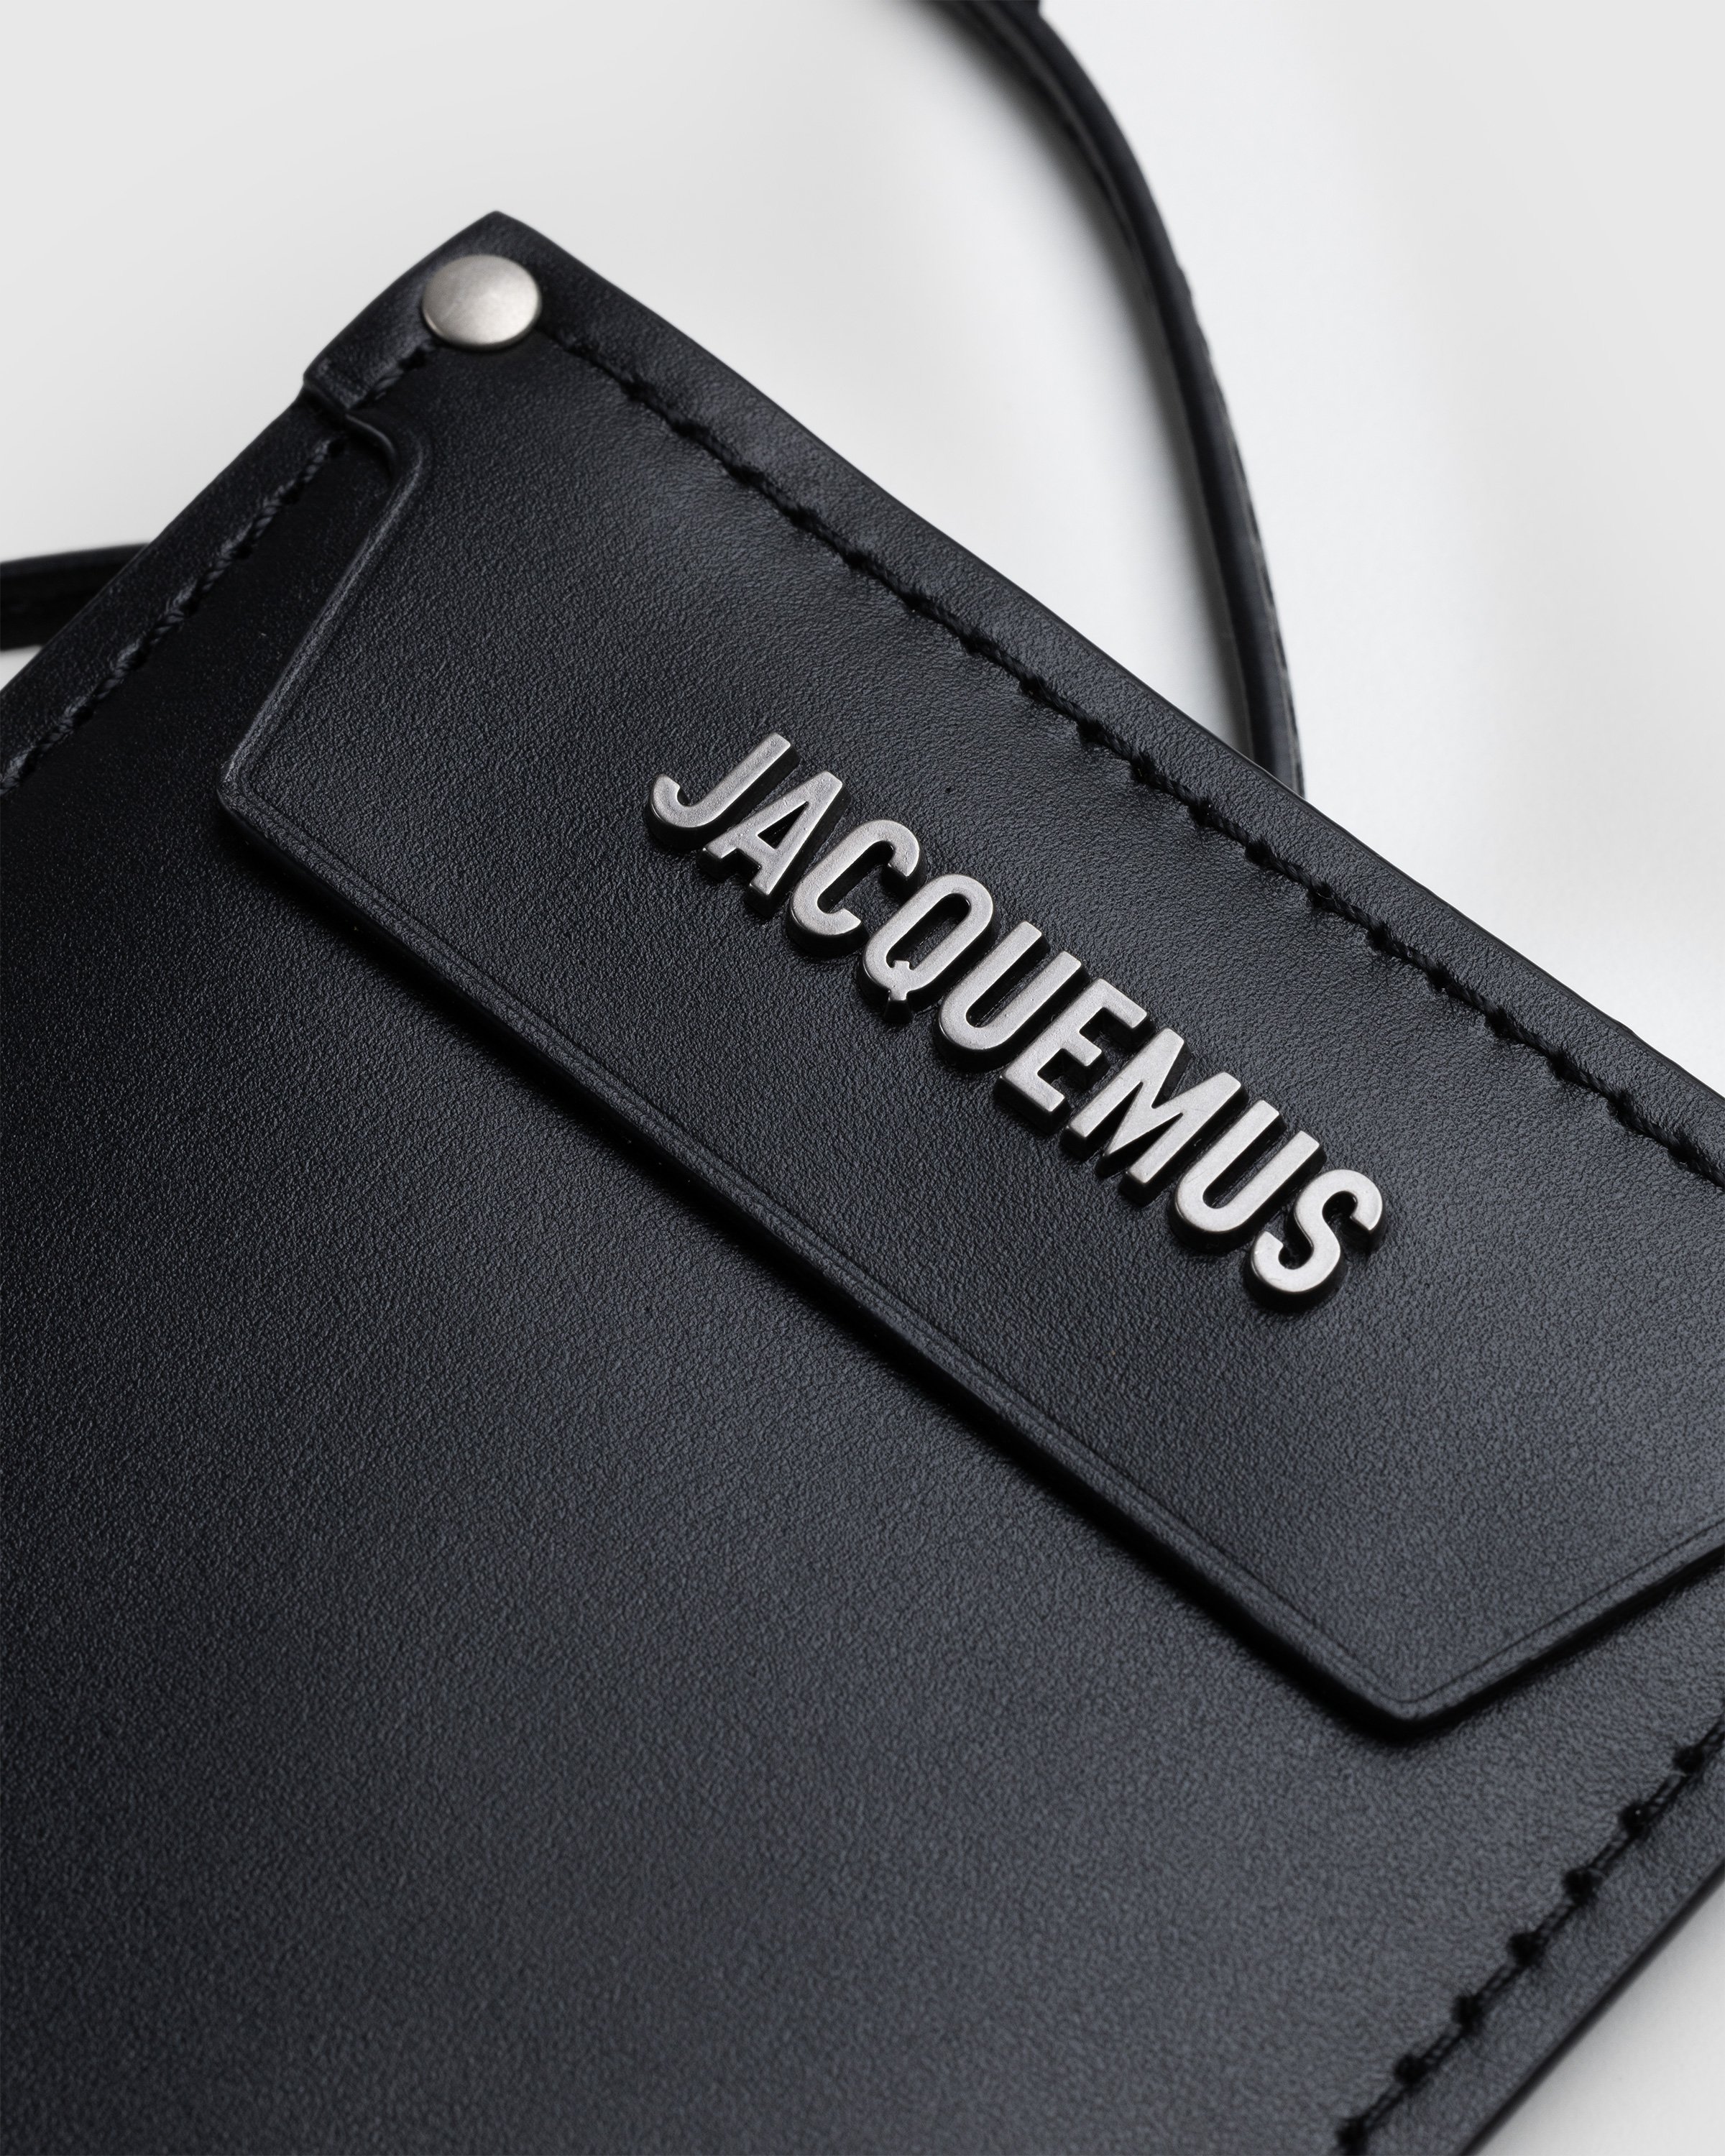 JACQUEMUS - Le Porte Jacquemus Black - Accessories - BLACK - Image 5